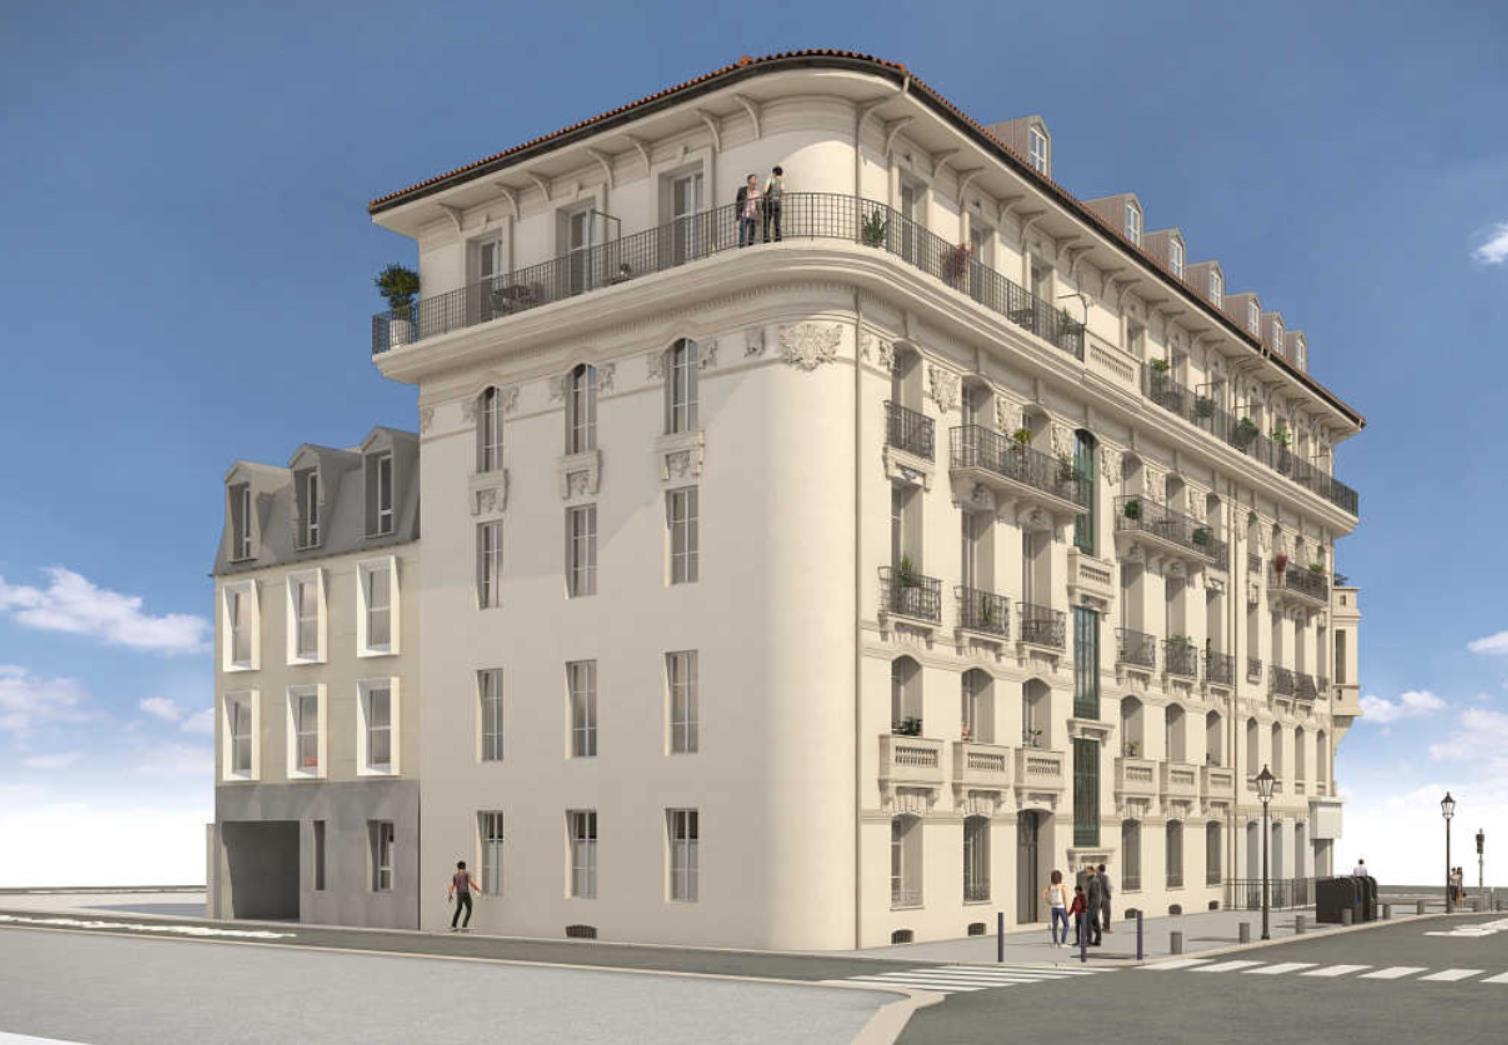 Programme immobilier neuf Nice entre Thiers et Libération